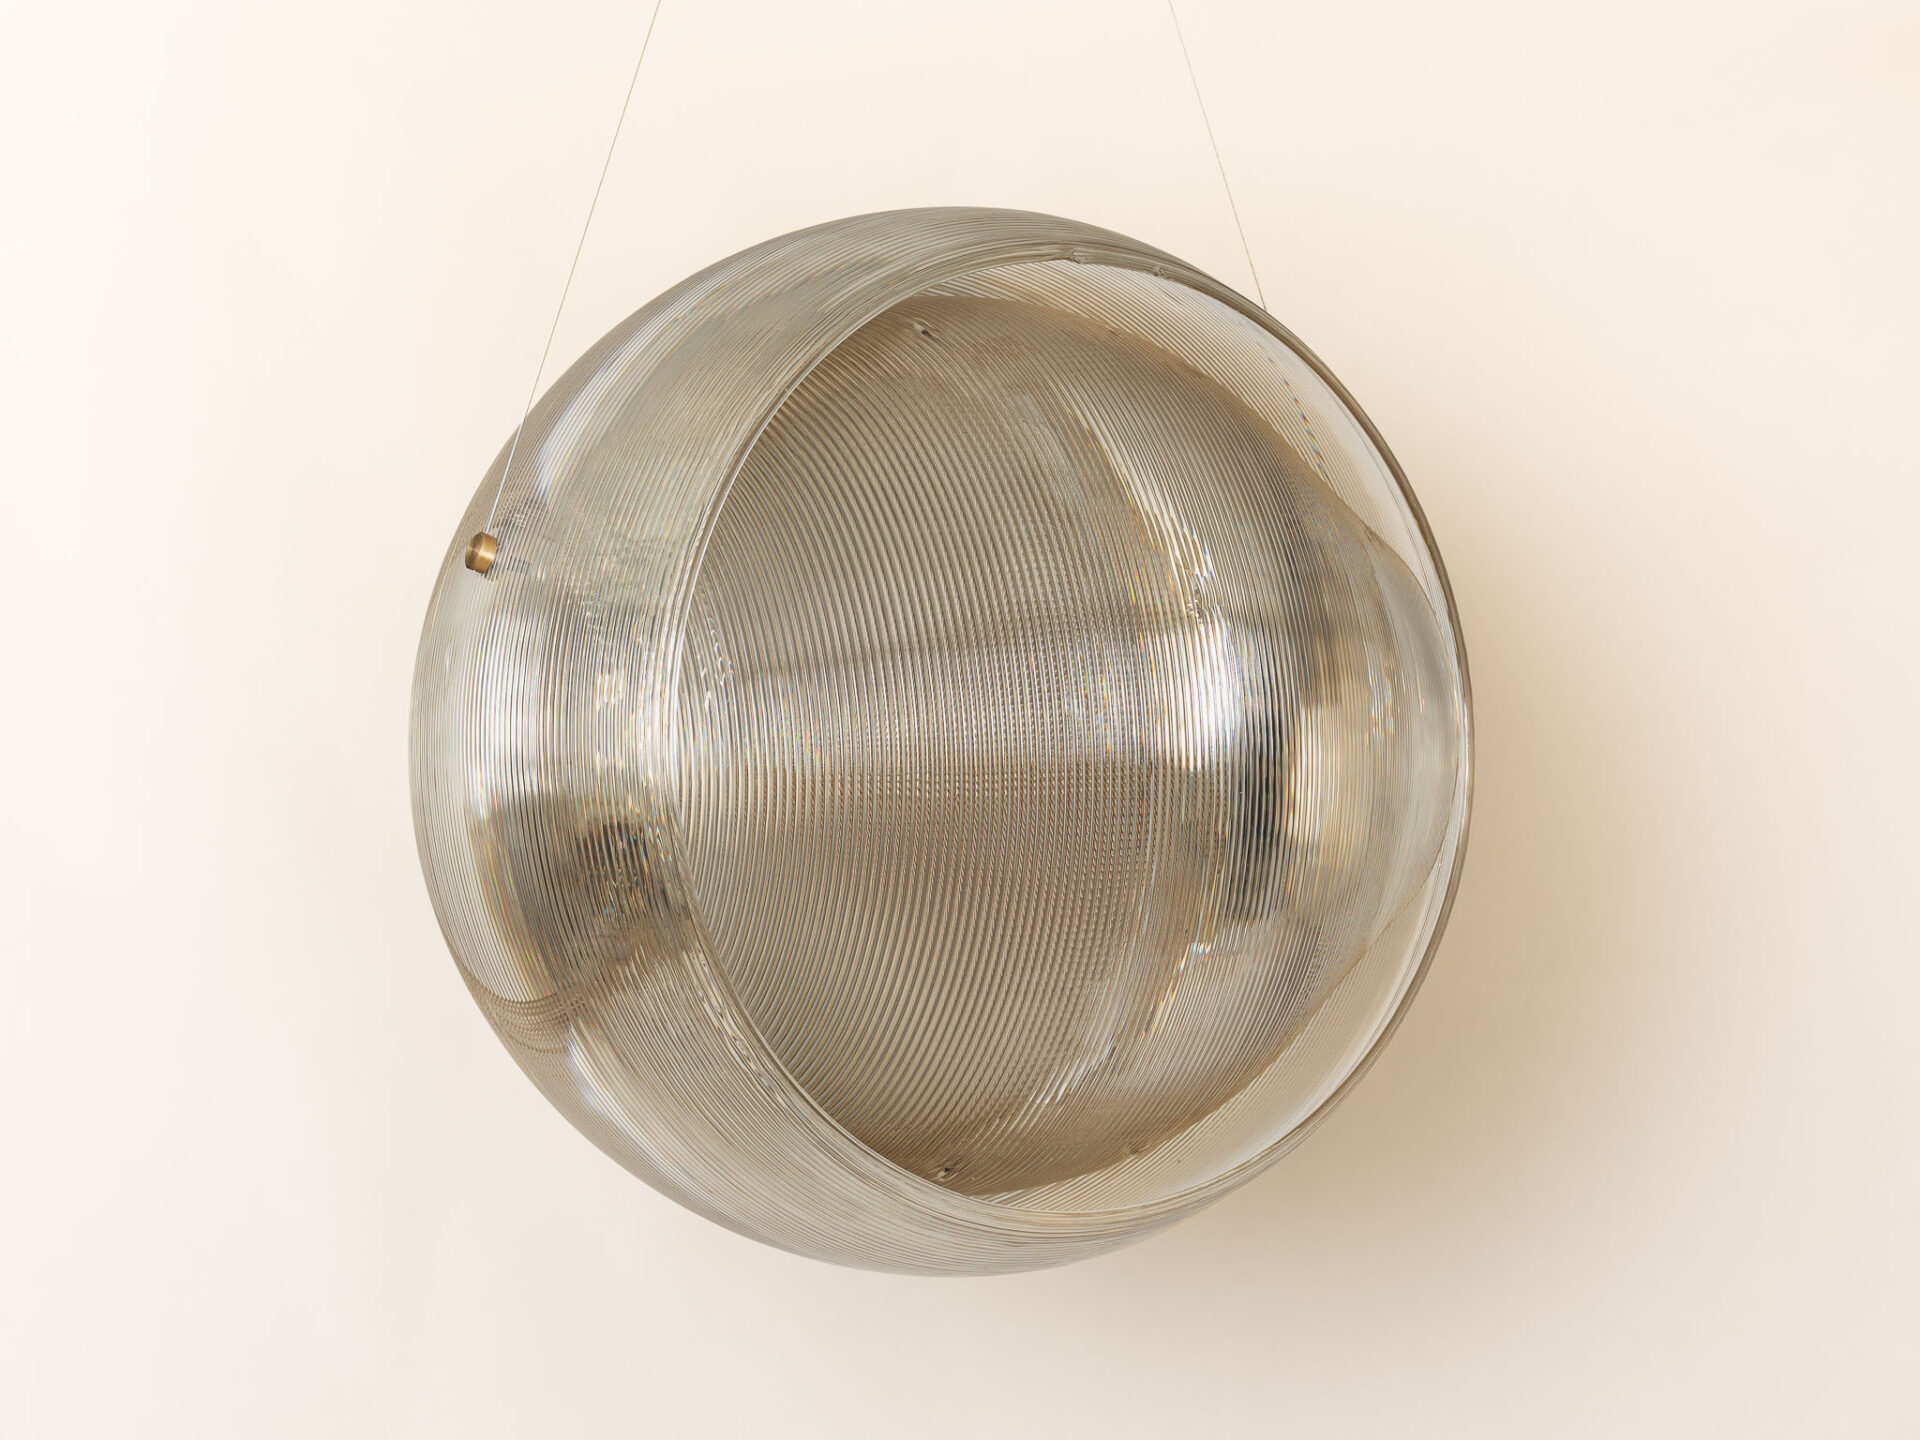 Dirk van der kooij helm light recycled plastics ceiling lamp